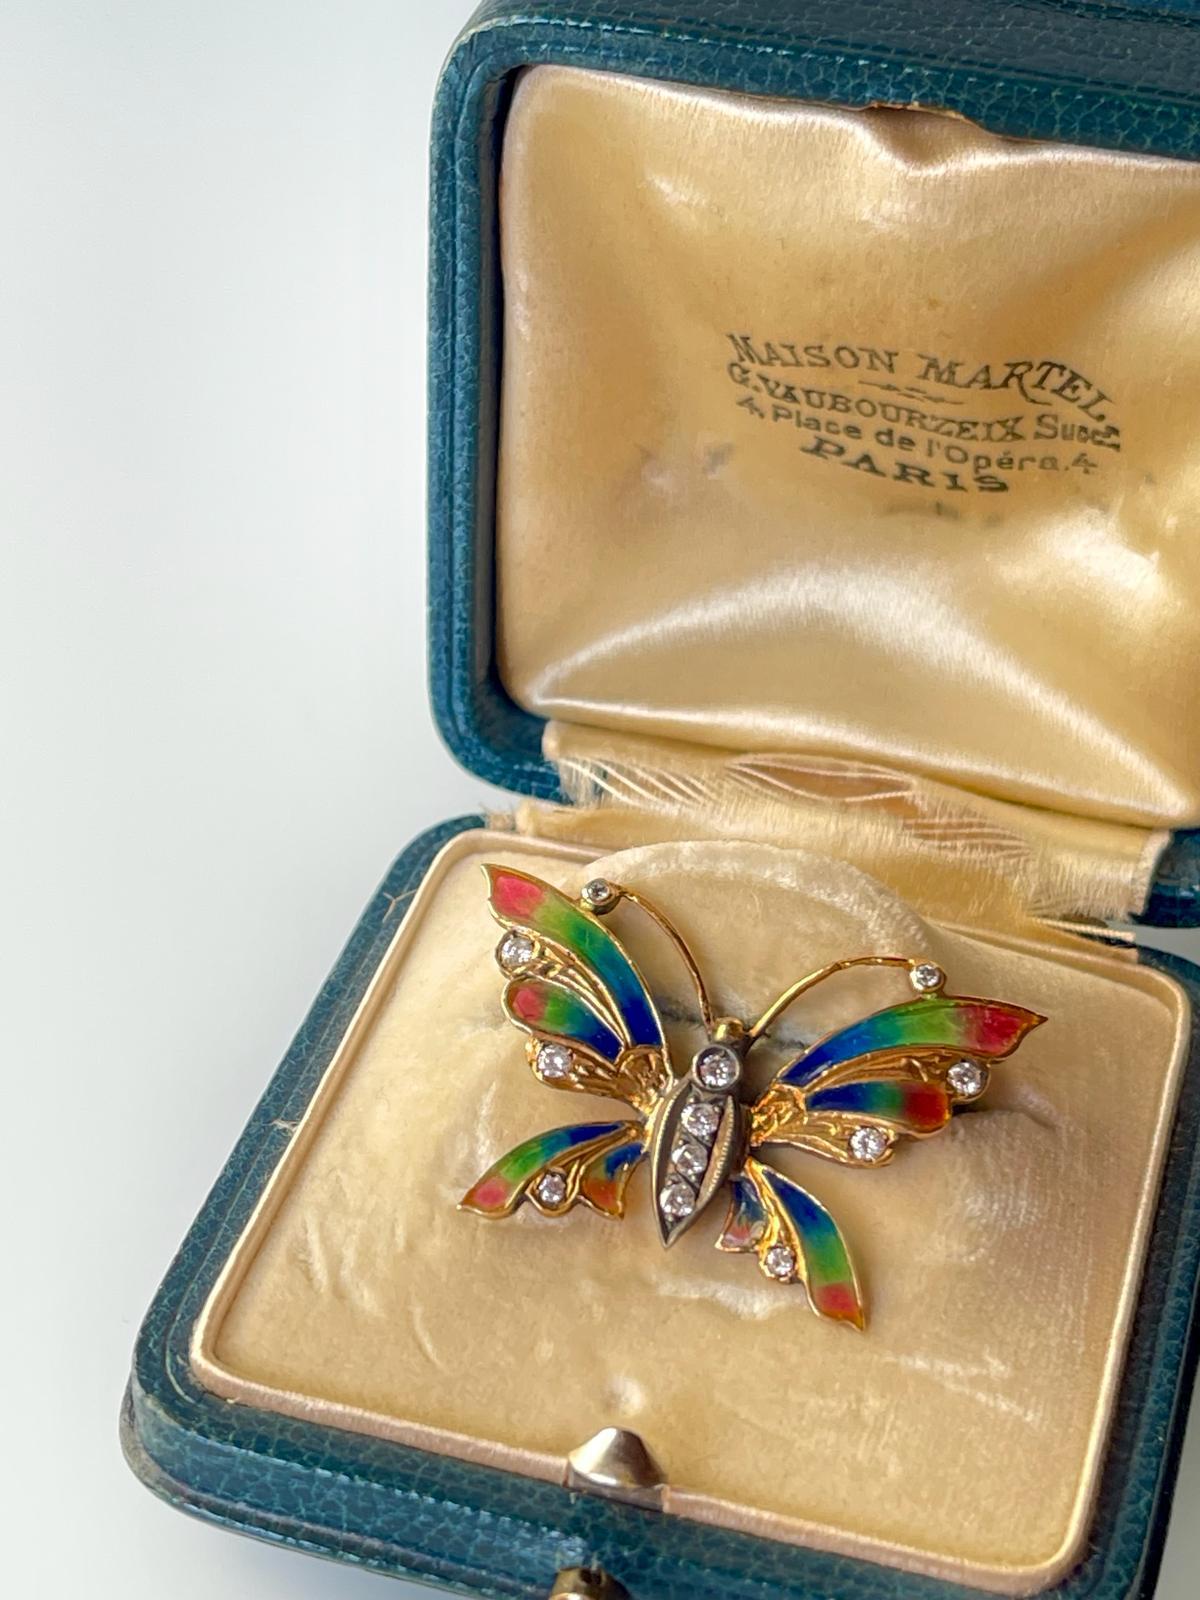 Eine hübsche frühe 20. Jahrhundert Jugendstil Edwardian Schmetterling Brosche in 18K Gelbgold und Silber mit selten zu finden  plique a jour mehrfarbig emailliert. 

Die Brosche ist mit 12 Diamanten im Brillantschliff (ca. 0,40 ct TW) verziert,